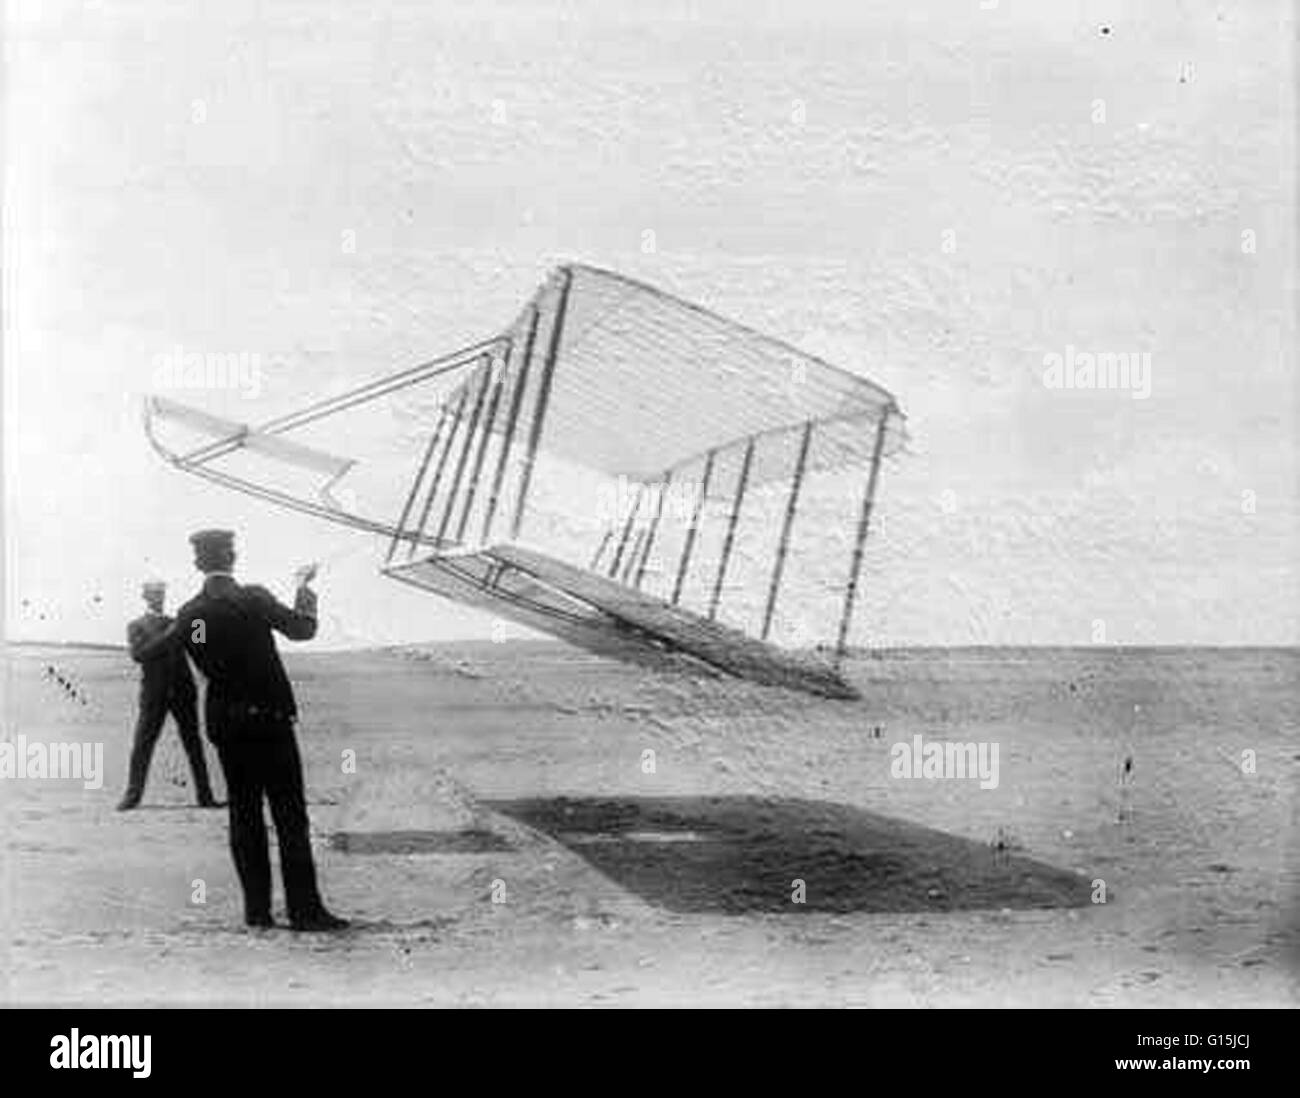 Orville (in primo piano) e Wilbur (fondo) Wright, volare in parapendio di prova come un aquilone nel 1901. Queste prove lungo con voli abitati e galleria del vento esperimenti permetteva ai fratelli per costruire la prima mai Powered volo aerei che hanno volato a Kil Foto Stock